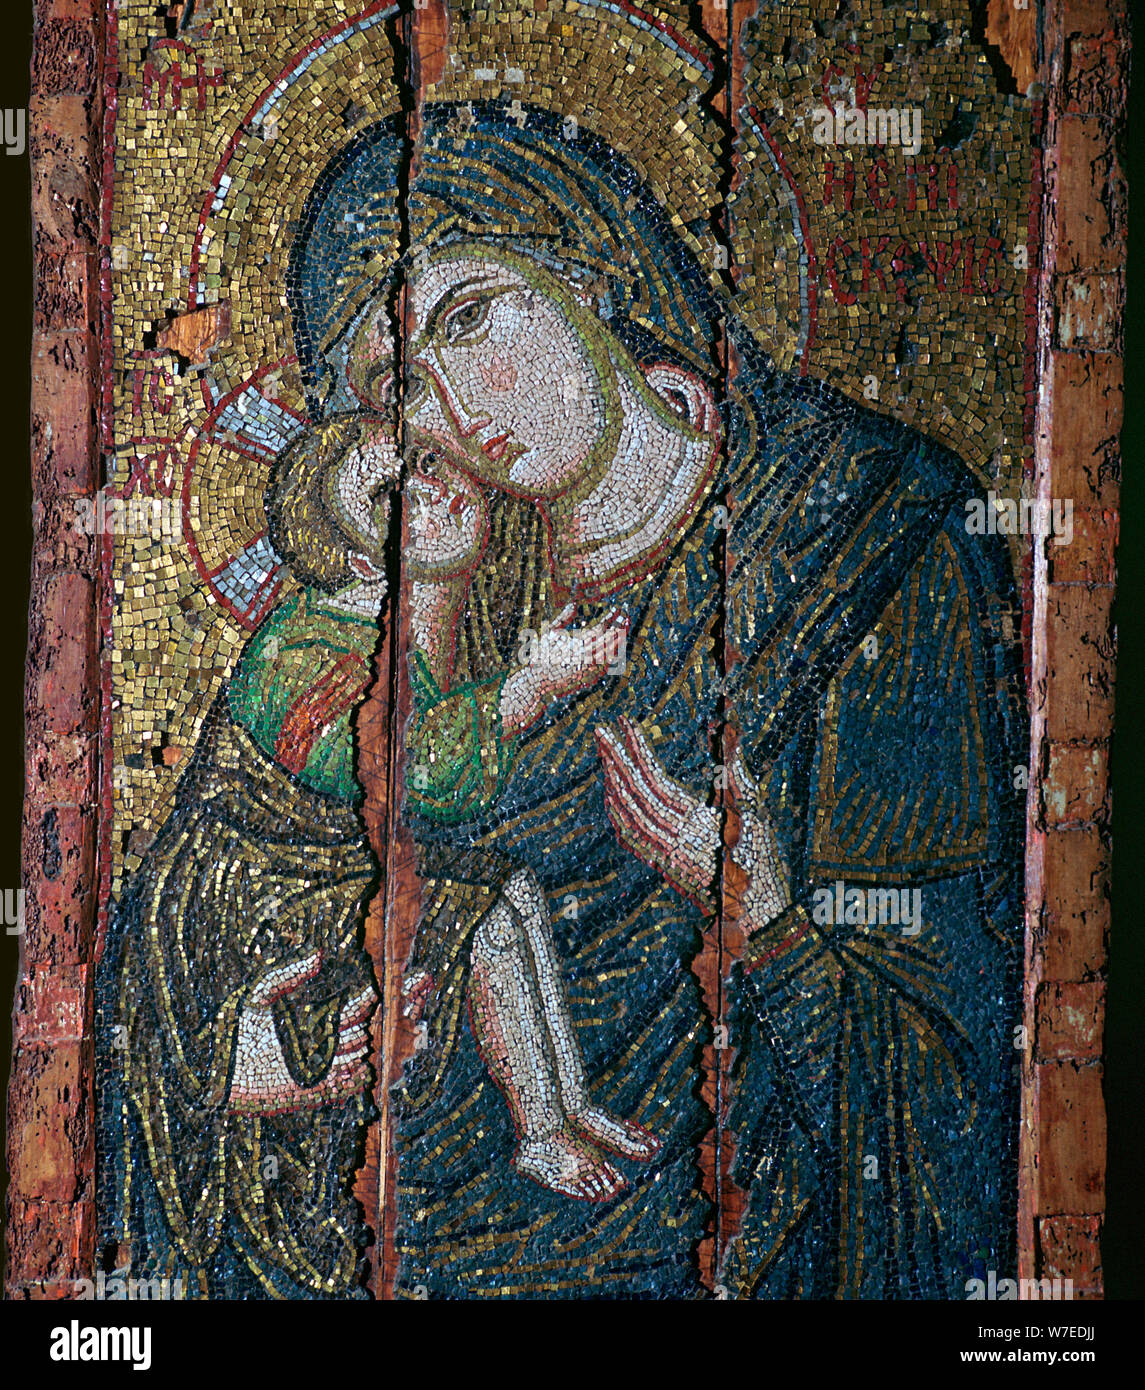 Ikon de mosaico de la Virgen y el Niño, siglo 14. Artista: Desconocido Foto de stock